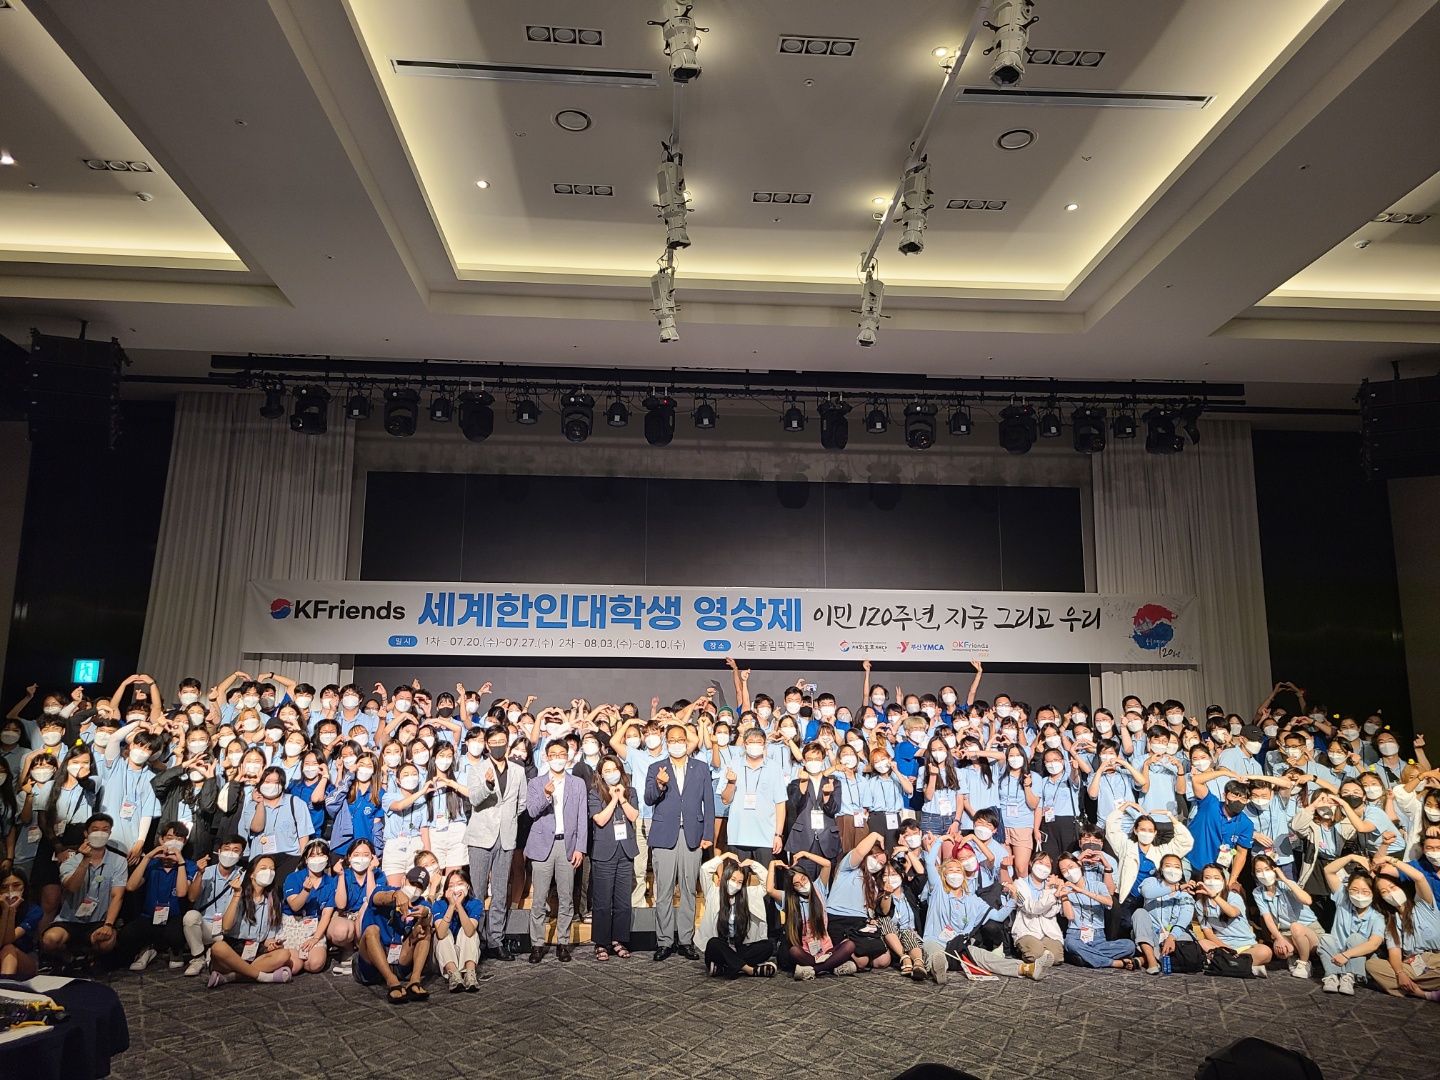 Opening ceremony of the World Korean University Student Film Festival